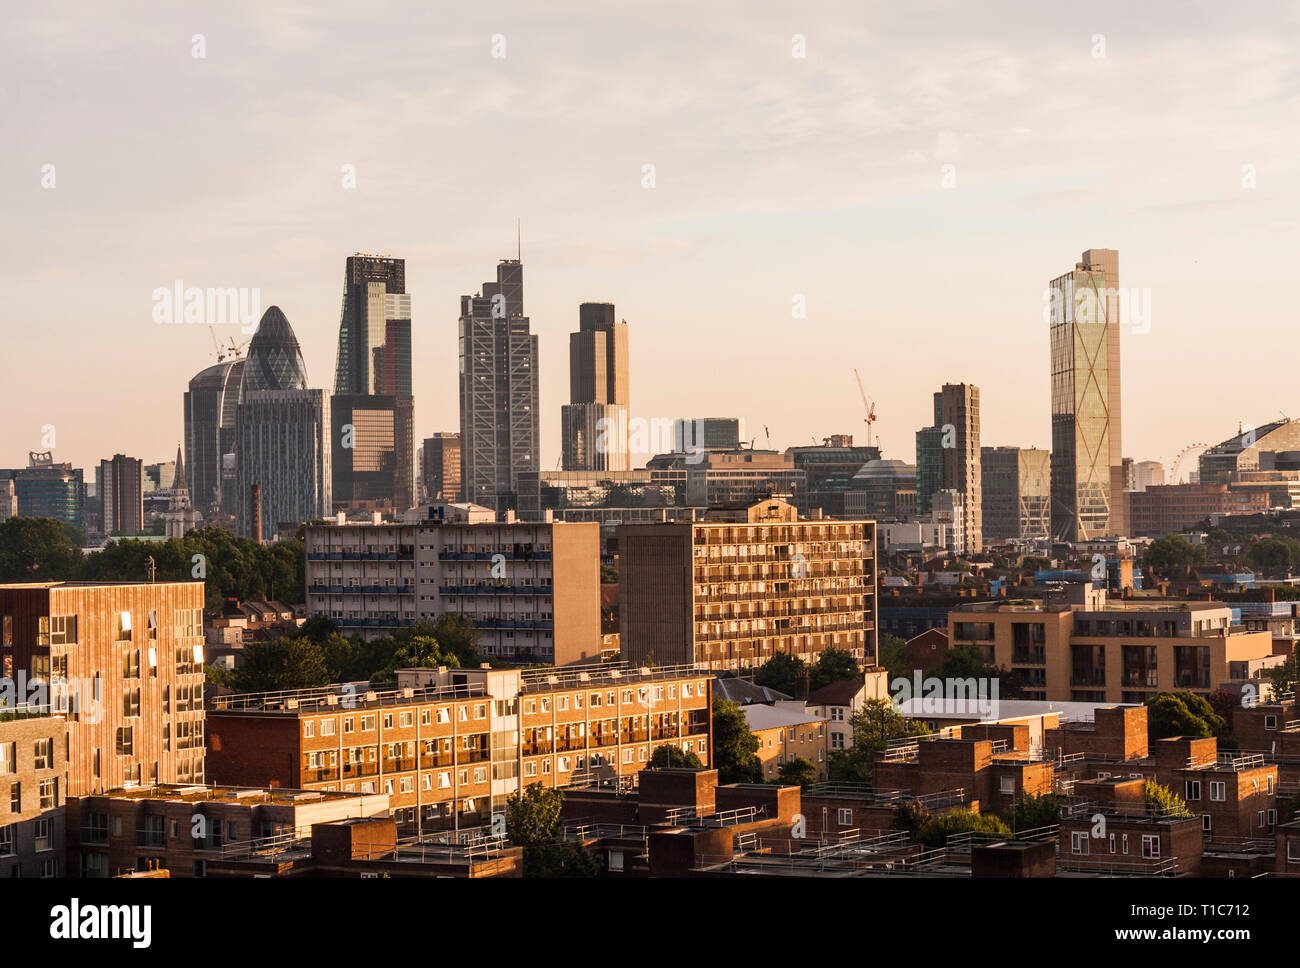 Une vue de la ville de Londres comme vu de Tower Hamlets, Londres, Angleterre, Royaume-Uni Banque D'Images